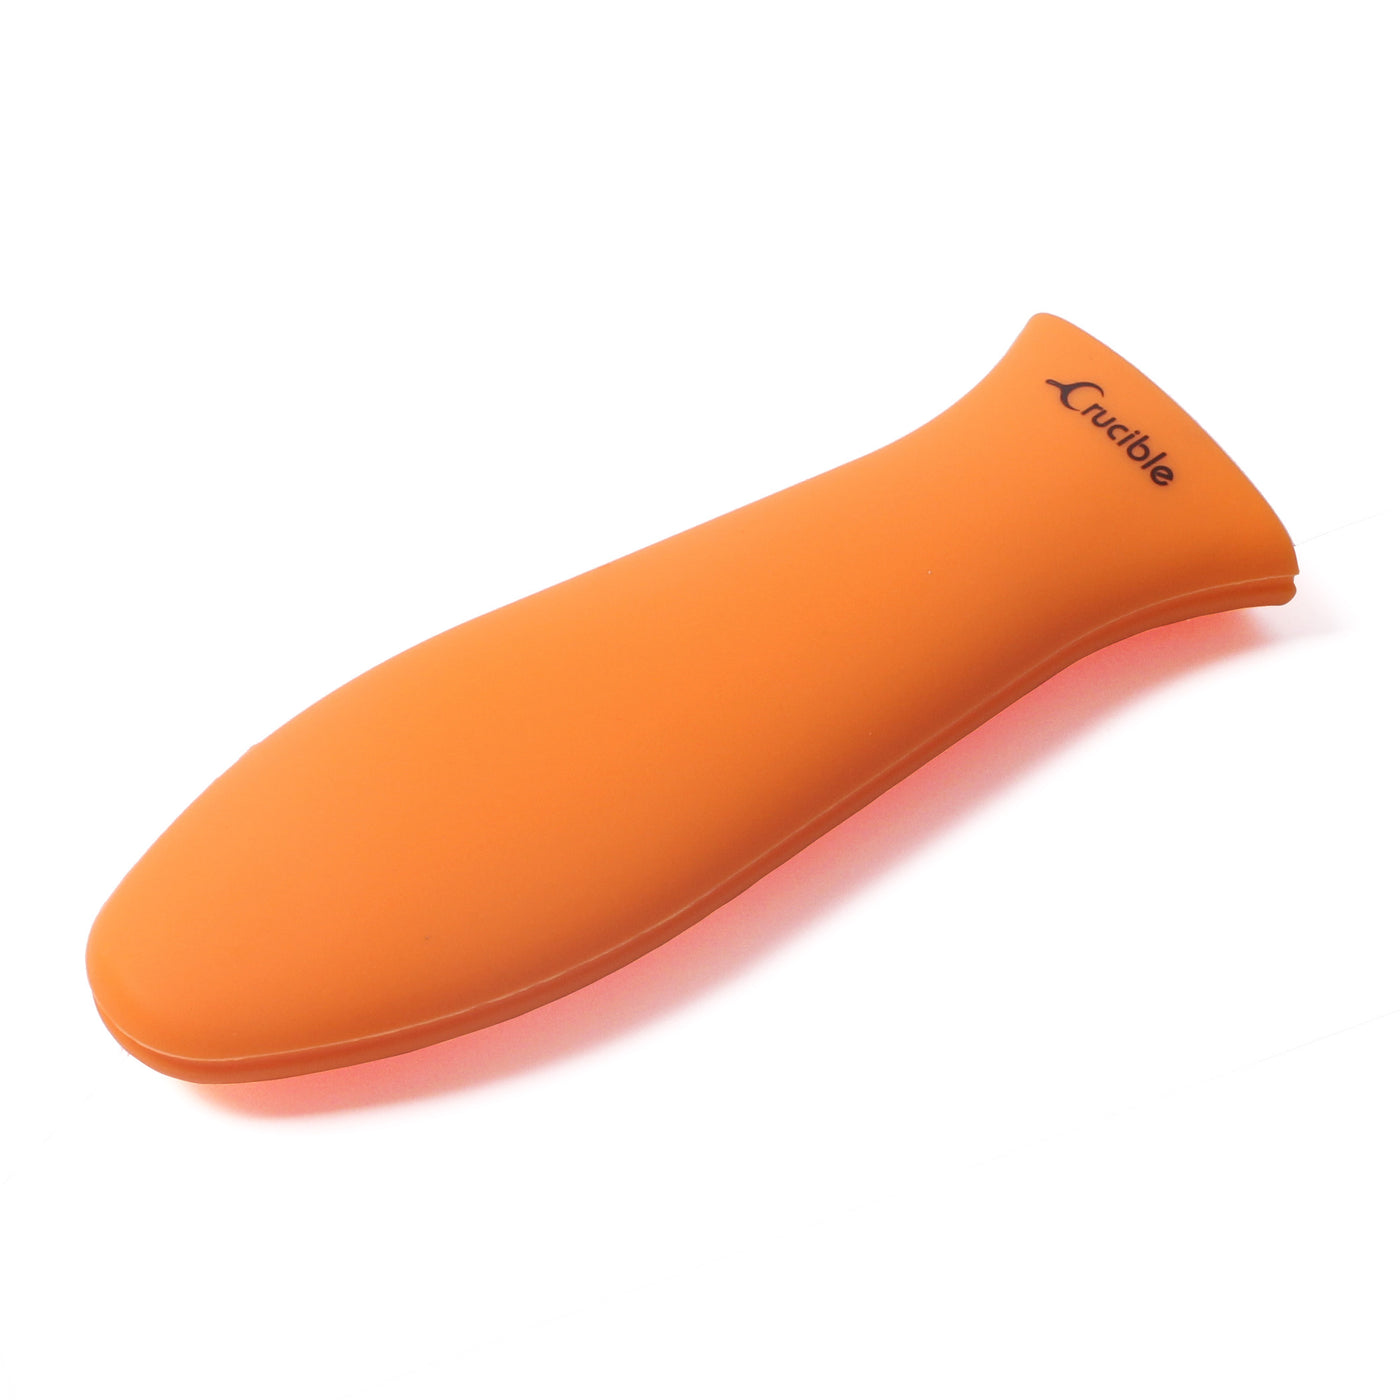 Silicone Potholder (Orange Large) for Cast Iron Skillets